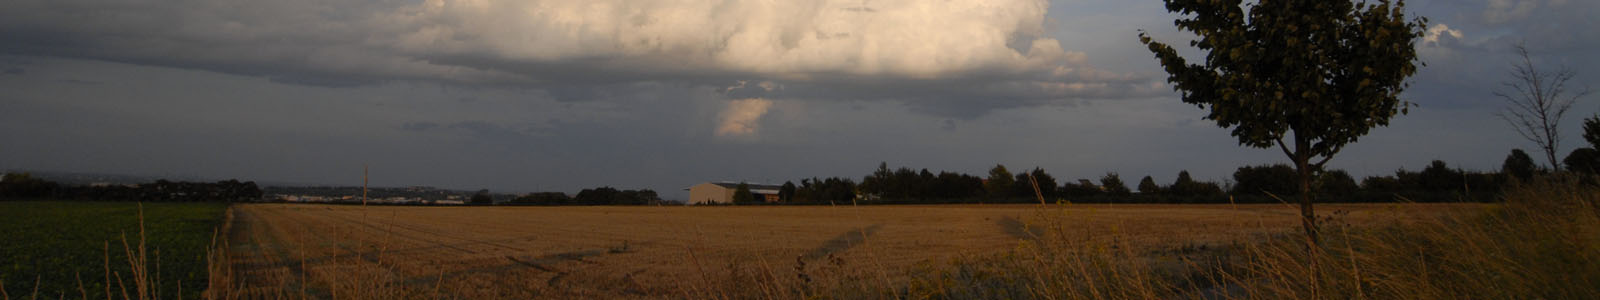 Dunkle Wolken über abgeerntetem Getreidefeld ©Feuerbach